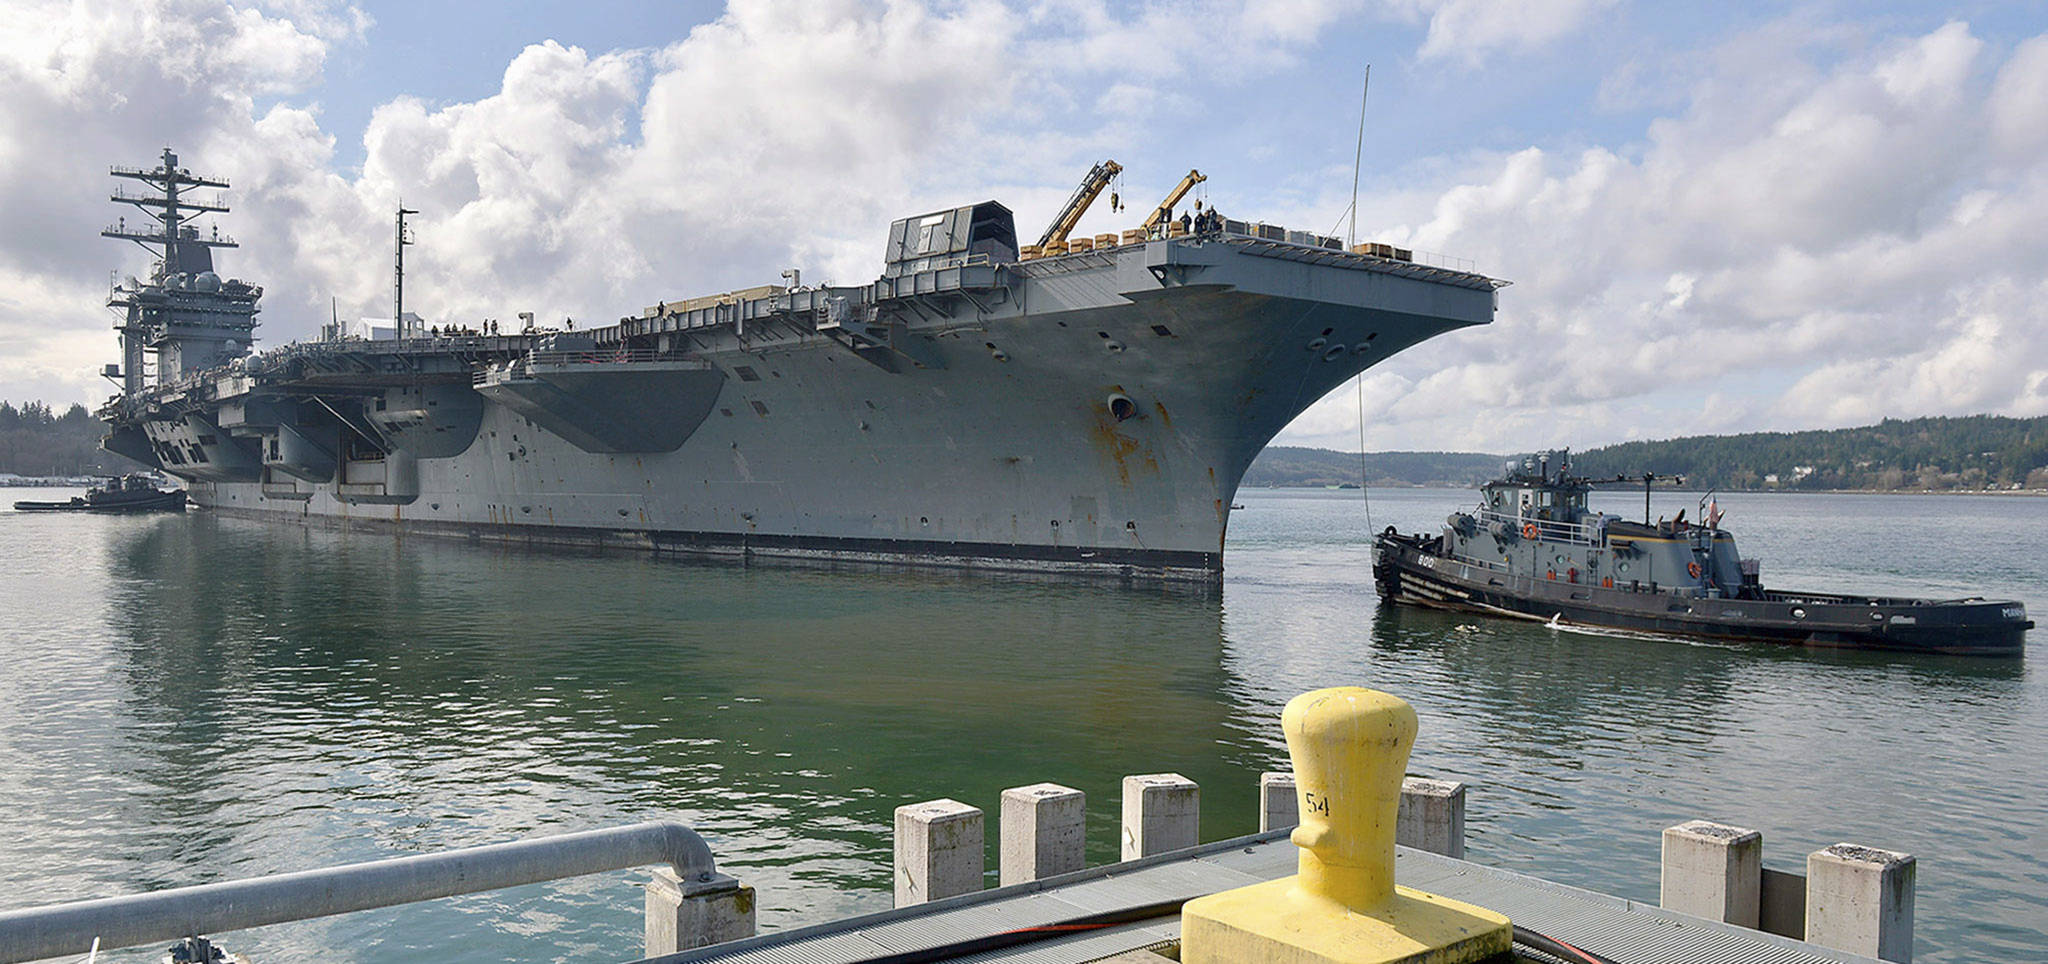 Everett lobbies the Navy to base an aircraft carrier here | HeraldNet.com